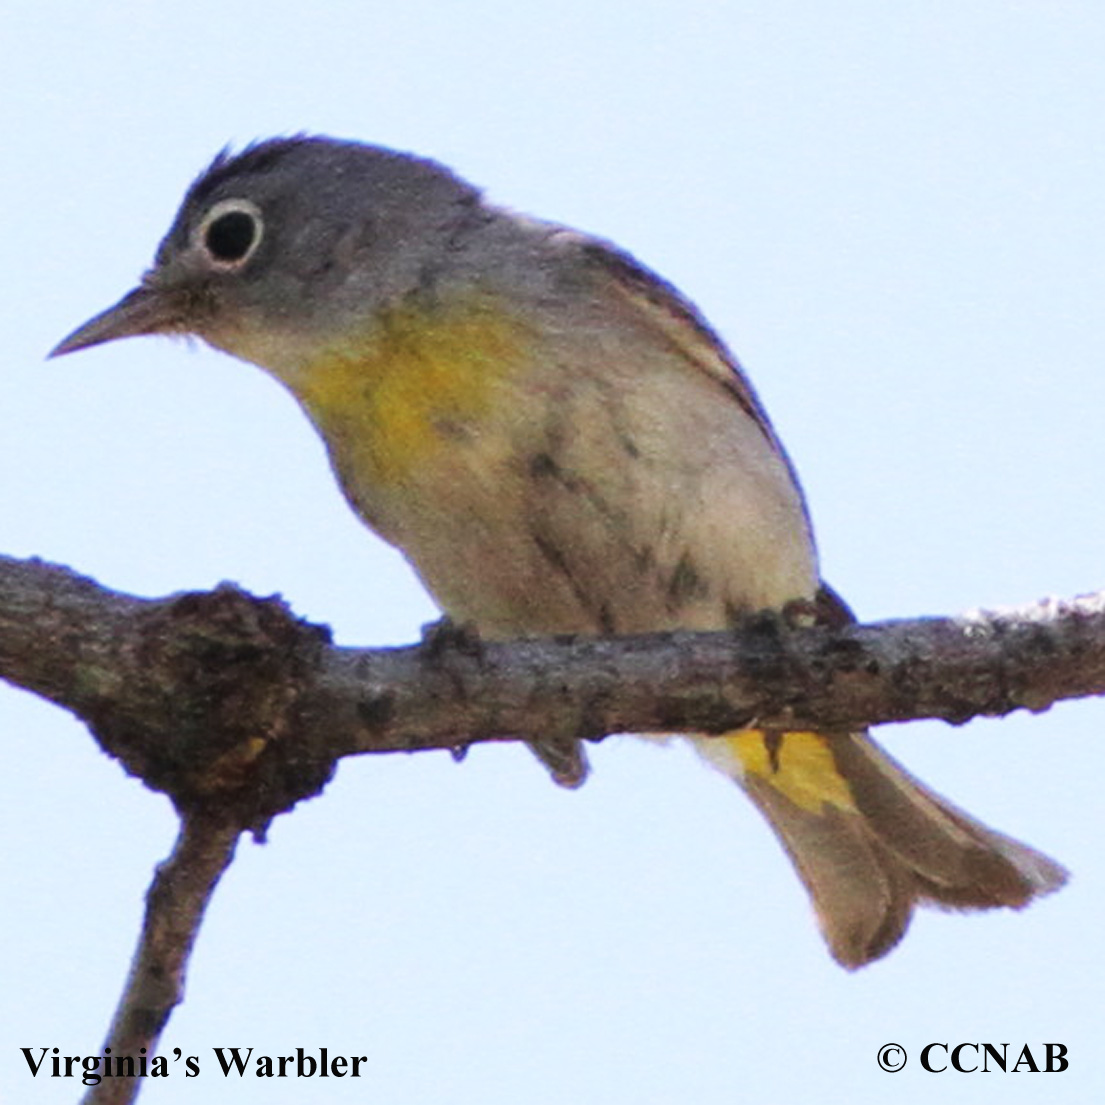 Virginia's Warbler